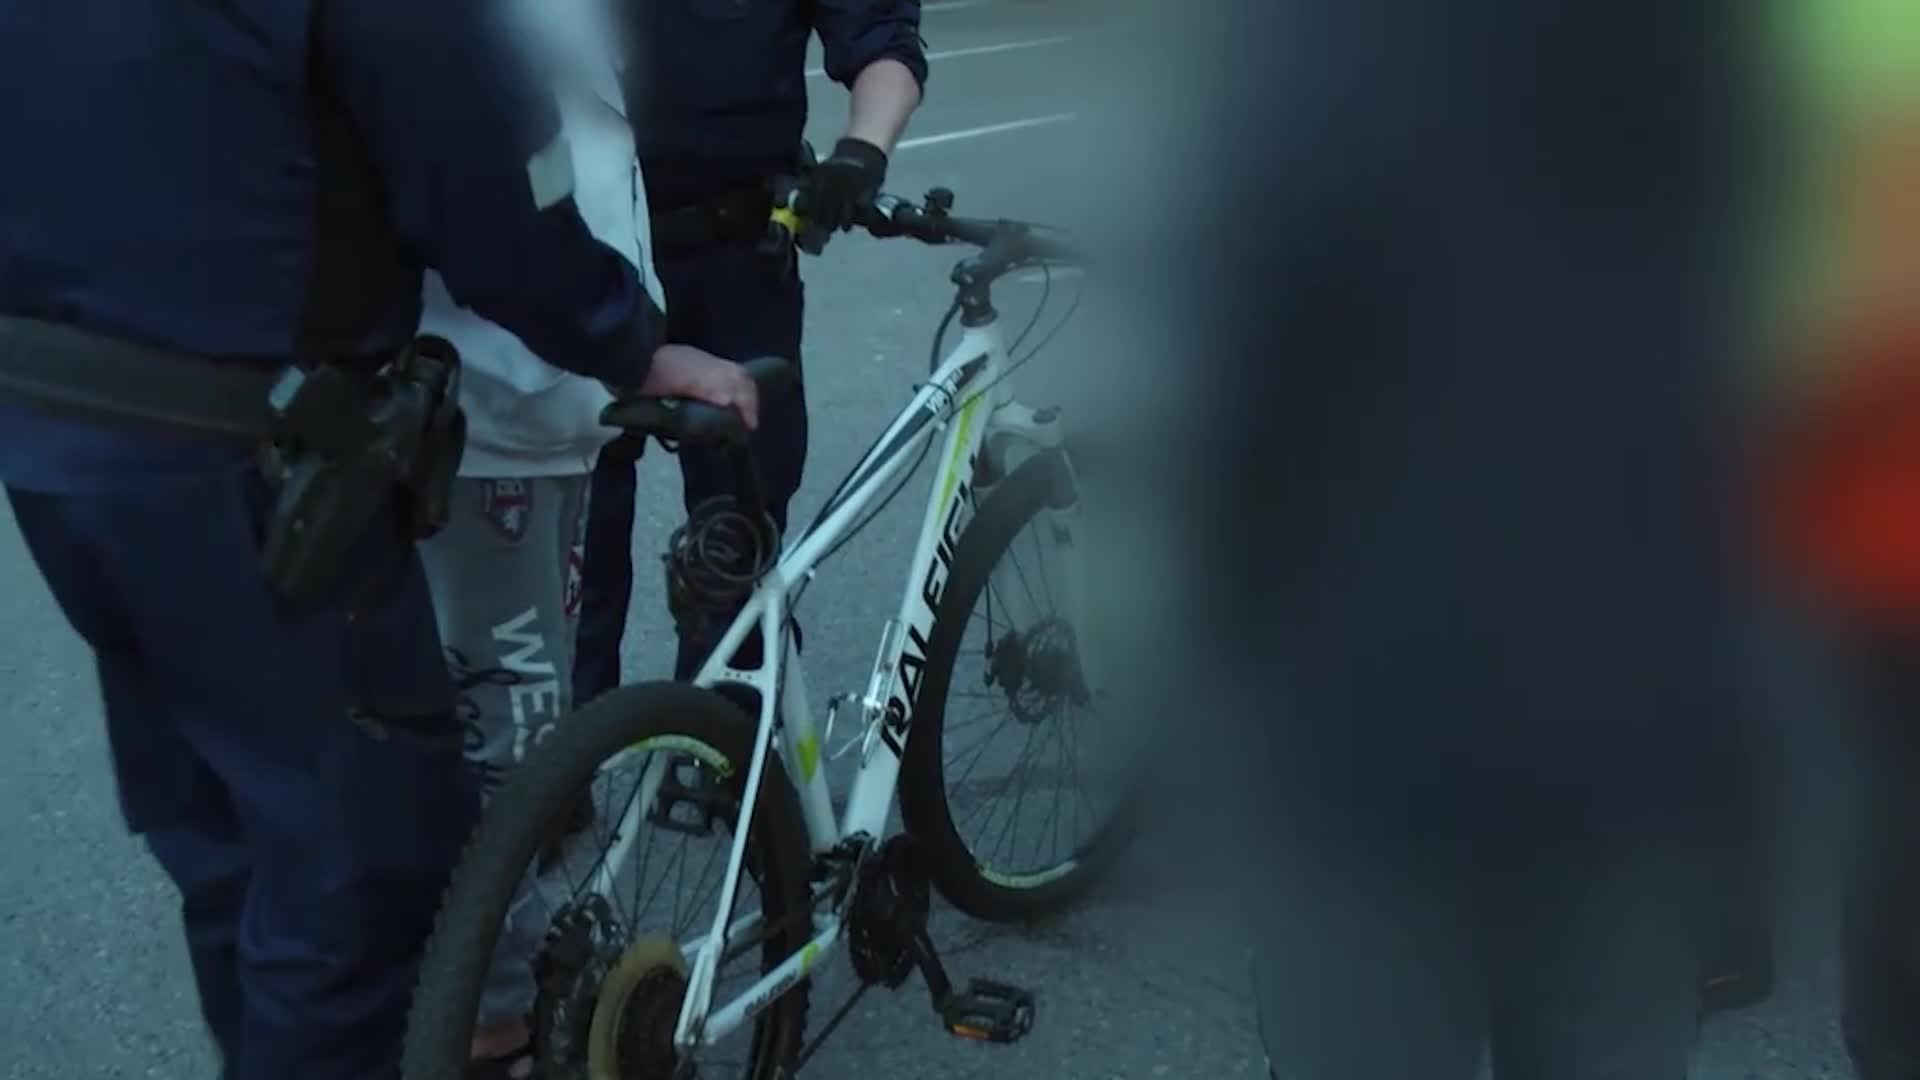 Poliisipartio virittää pyörävarkaalle ovelan ansan – varas myy saaliinsa tietämättään pyörän oikealle omistajalle 